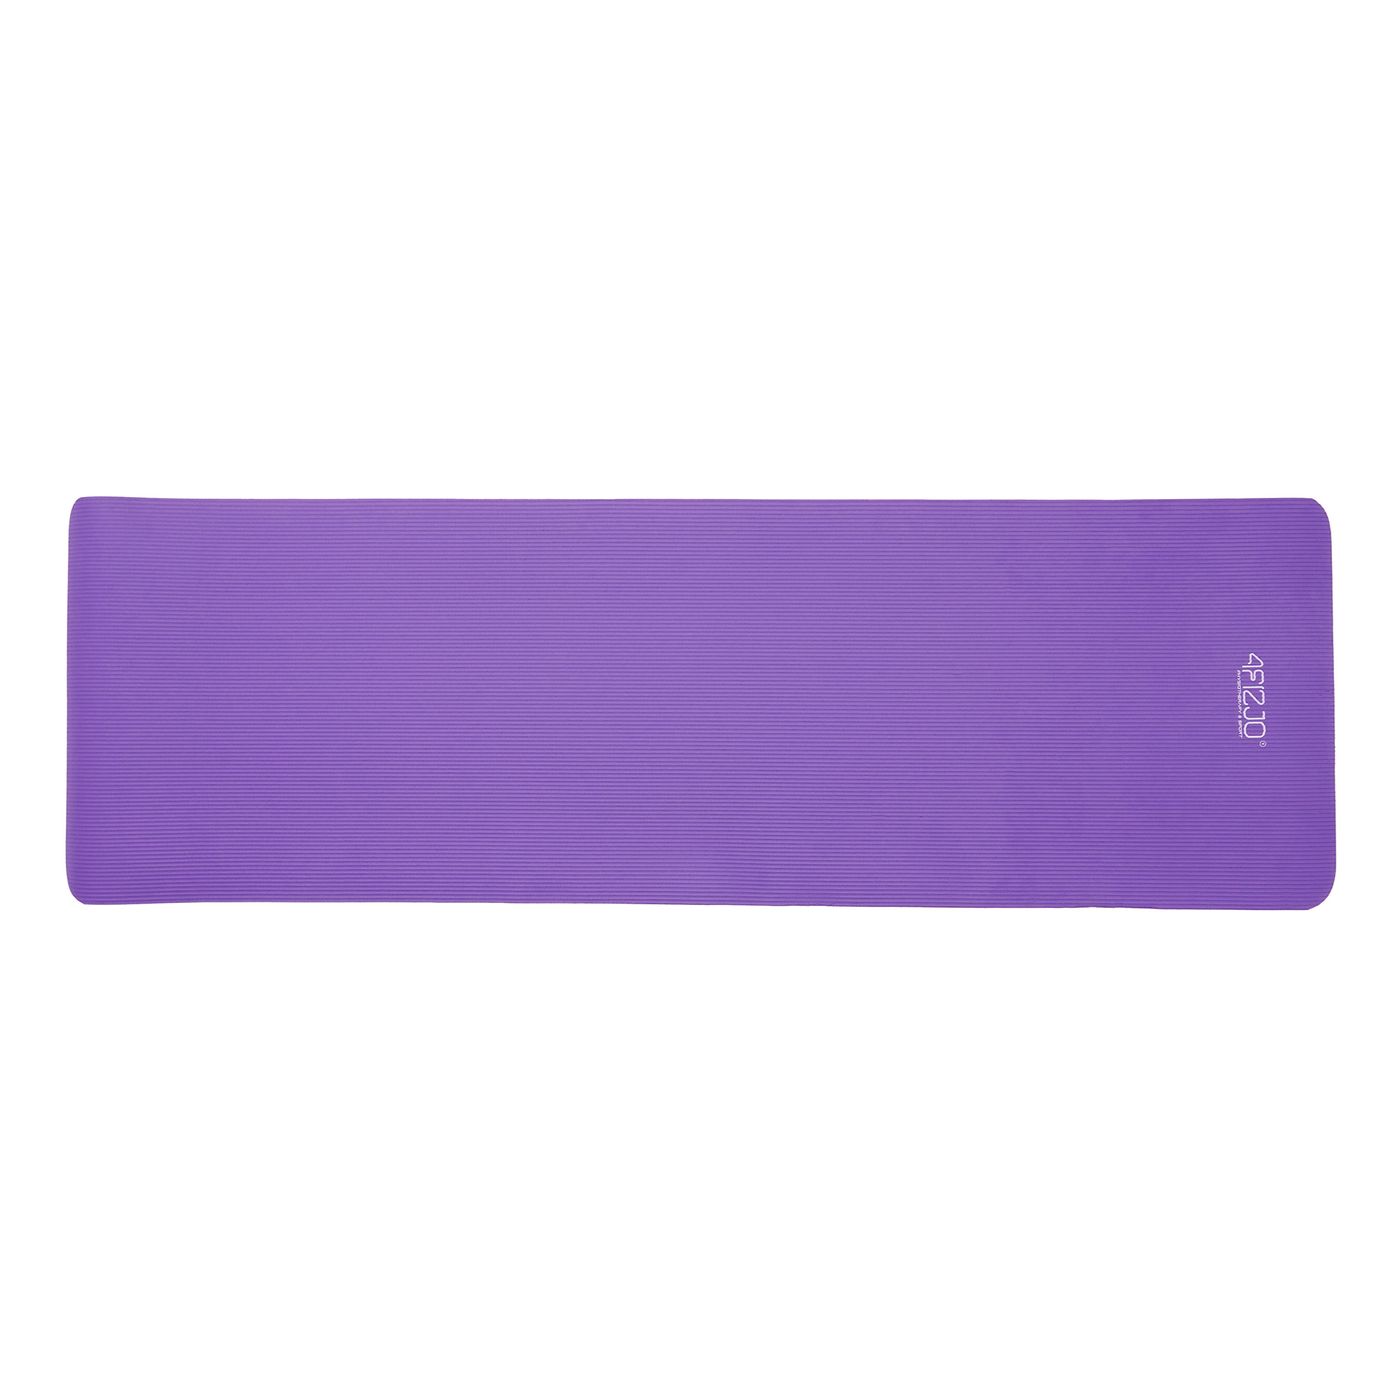 Килимок (мат) спортивний 4FIZJO NBR 180 x 60 x 1 см для йоги та фітнесу 4FJ0016 Violet